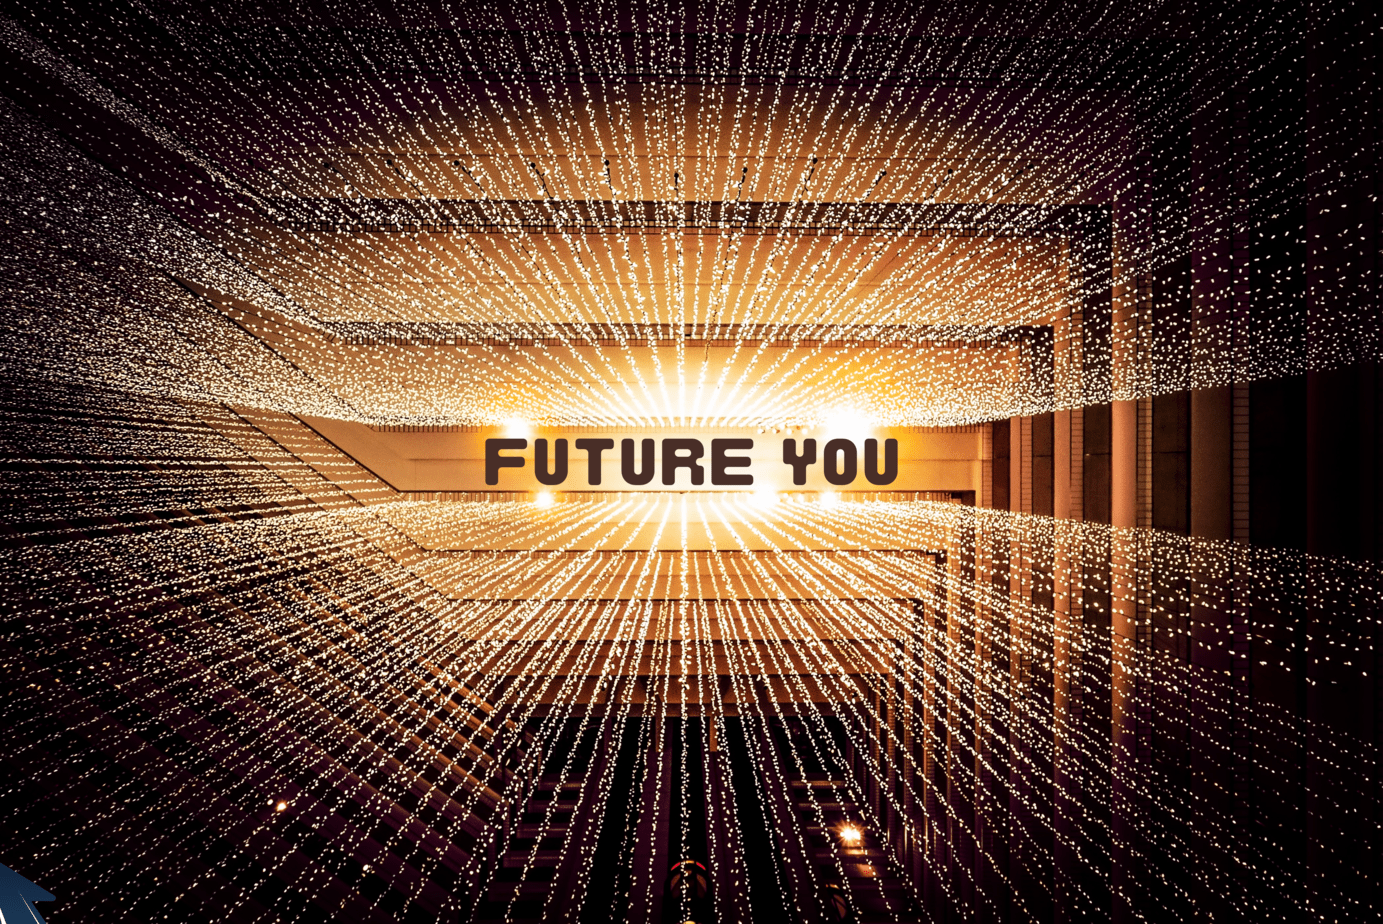 Future You - Meet Your Future Self